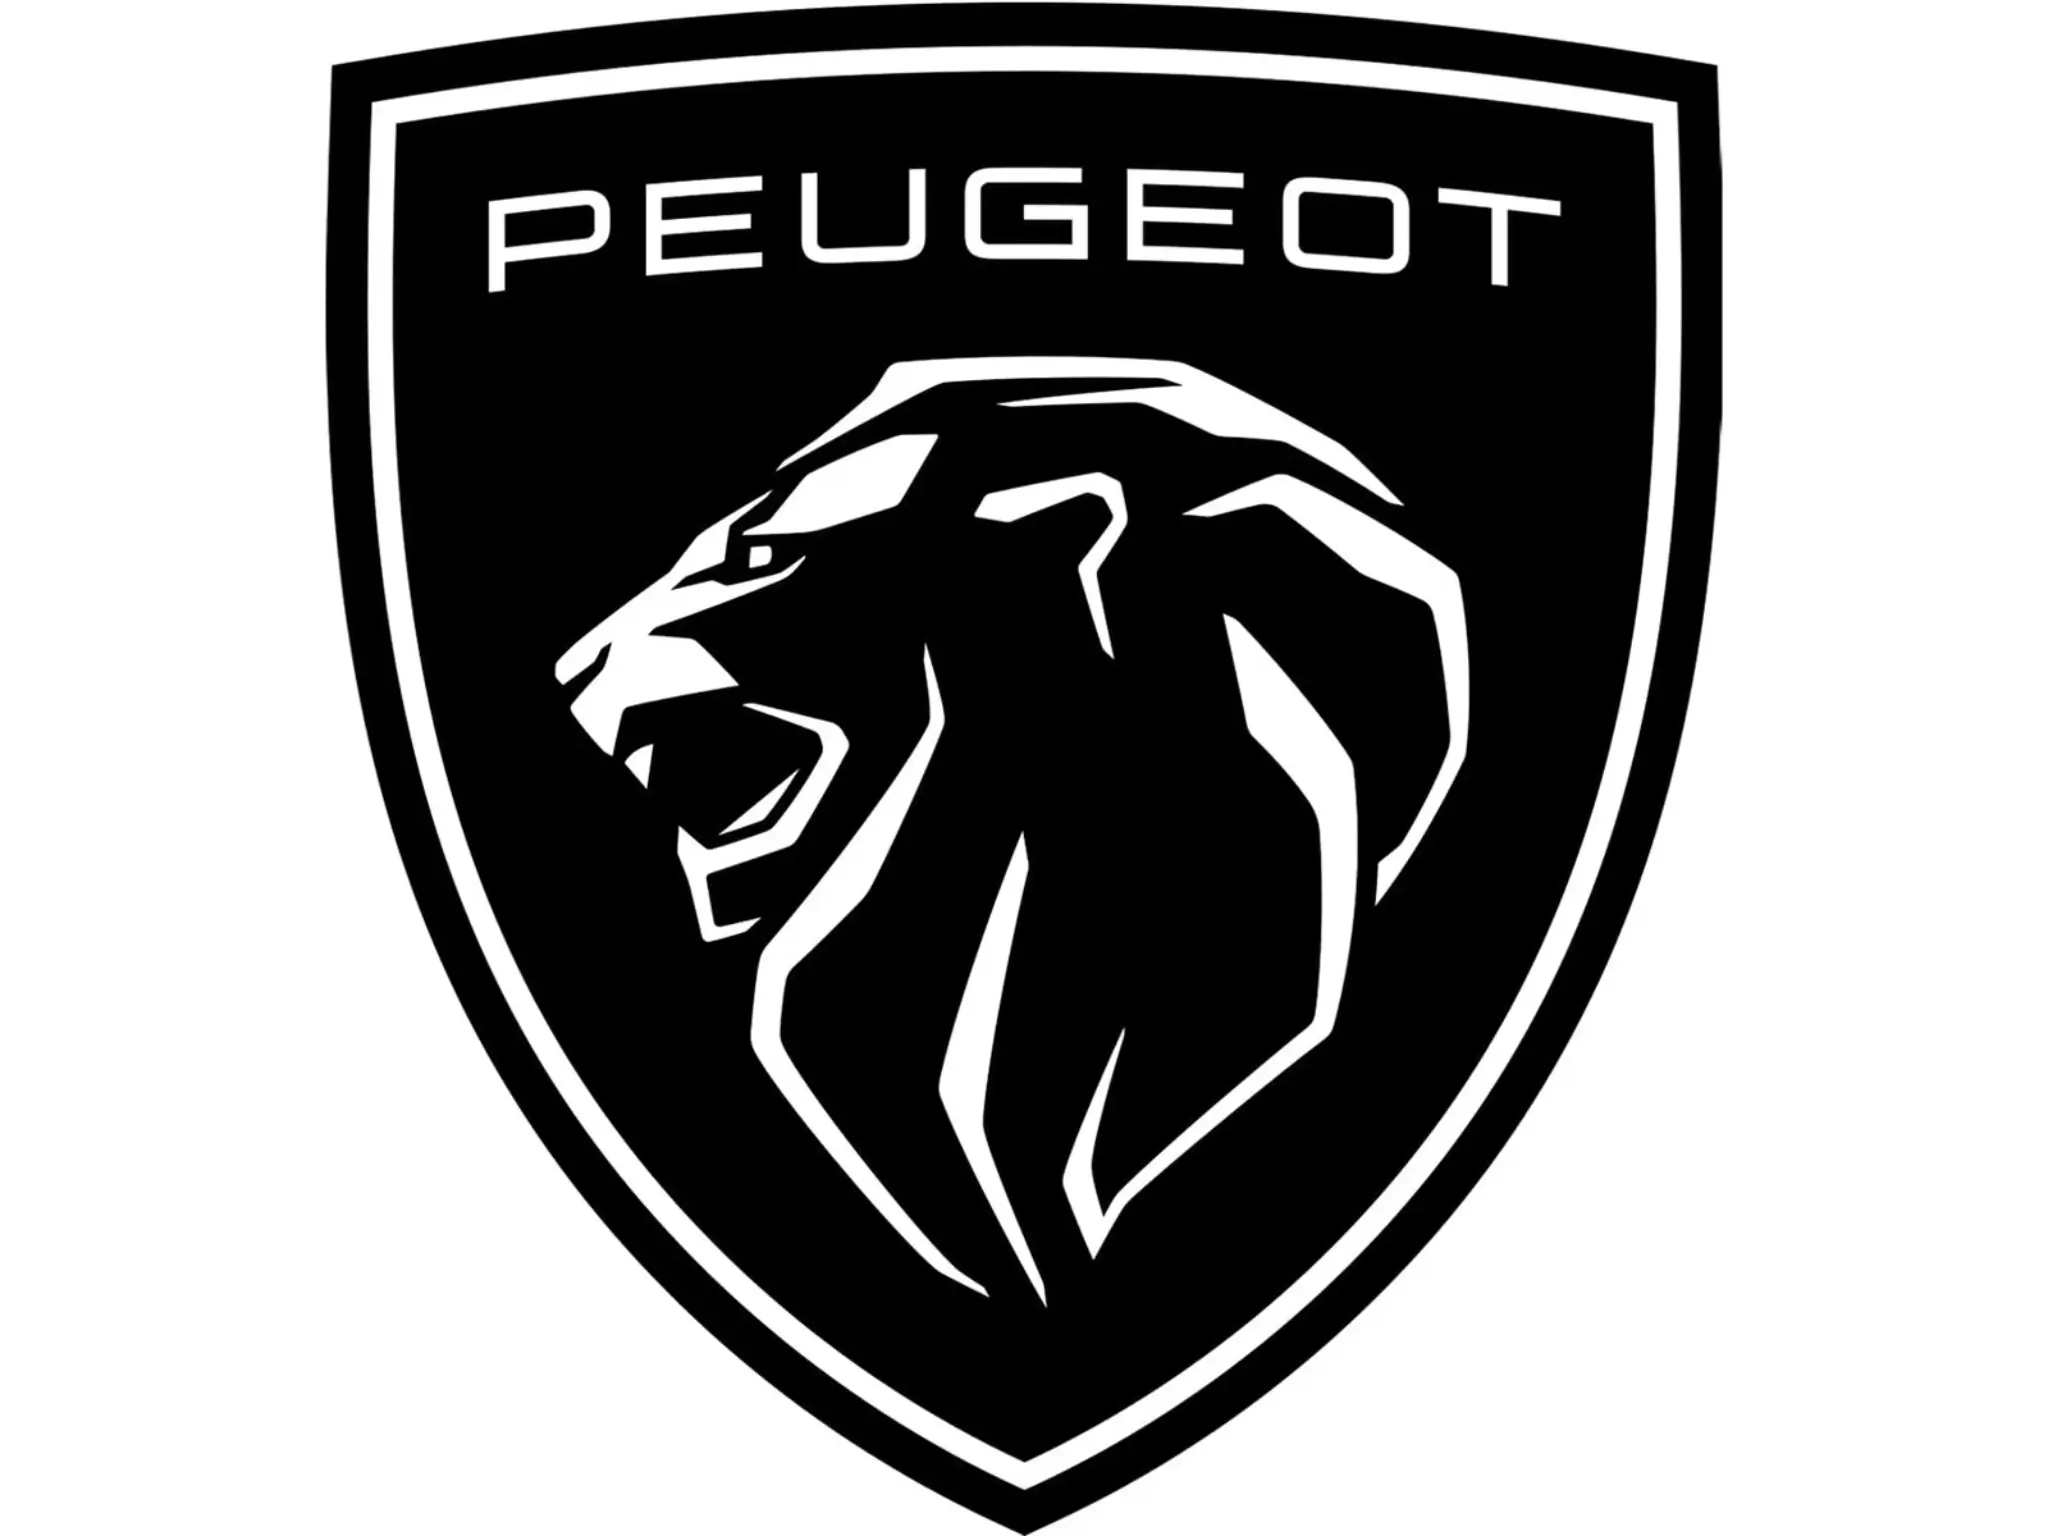 Logótipo preto da cabeça do leão a rugir pintada em branco, com as letras "Peugeot" também em branco.